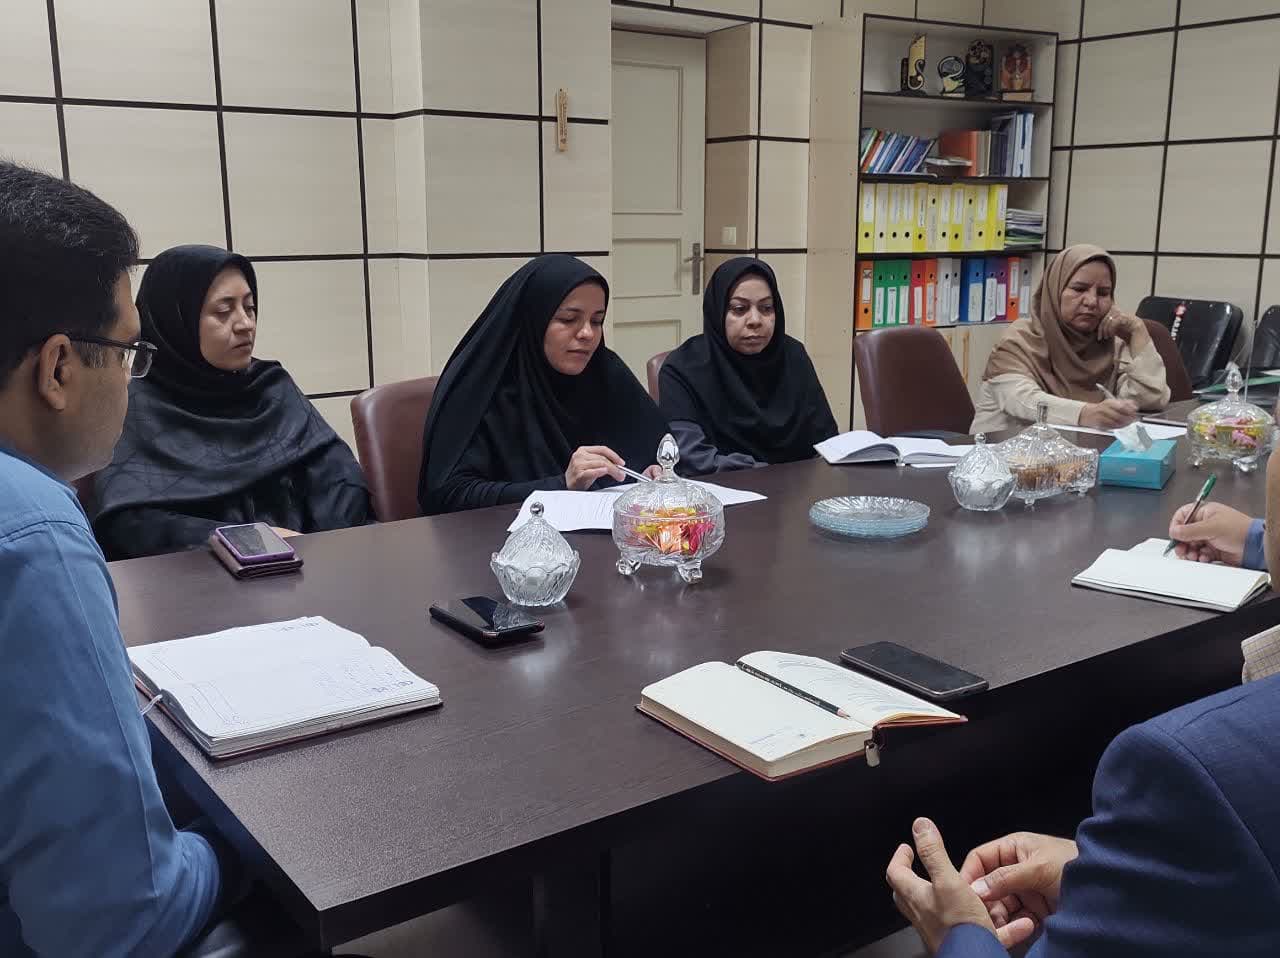 اولين جلسه كميته طرح هاي اثرگذار و ترجمان دانش دانشگاه در مهرماه برگزار گردید.